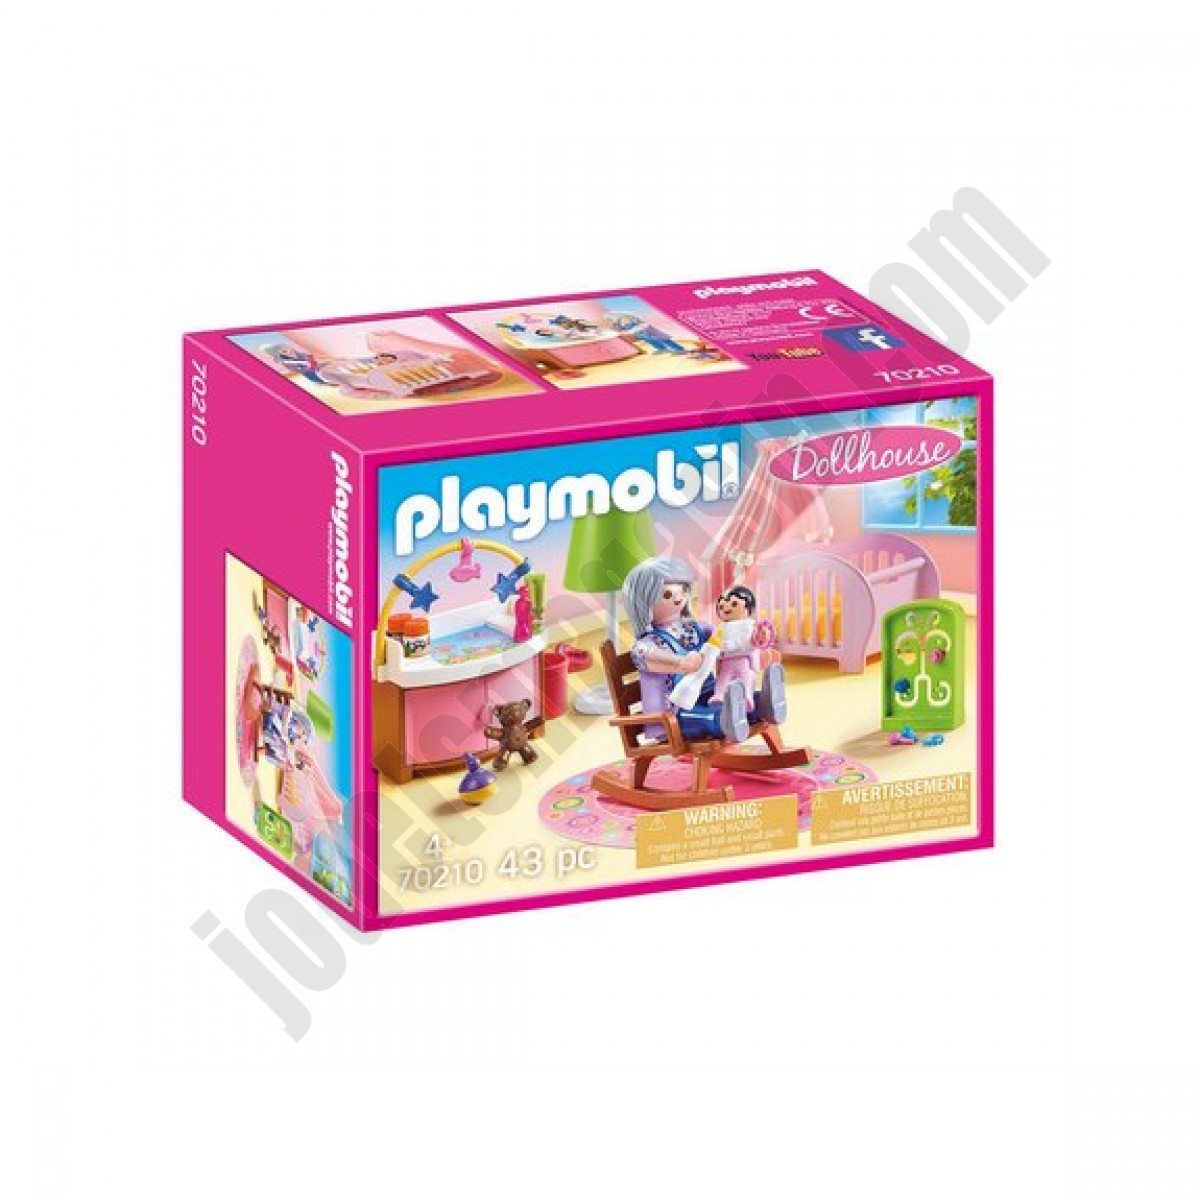 Chambre de bébé Playmobil Dollhouse 70210 ◆◆◆ Nouveau - Chambre de bébé Playmobil Dollhouse 70210 ◆◆◆ Nouveau